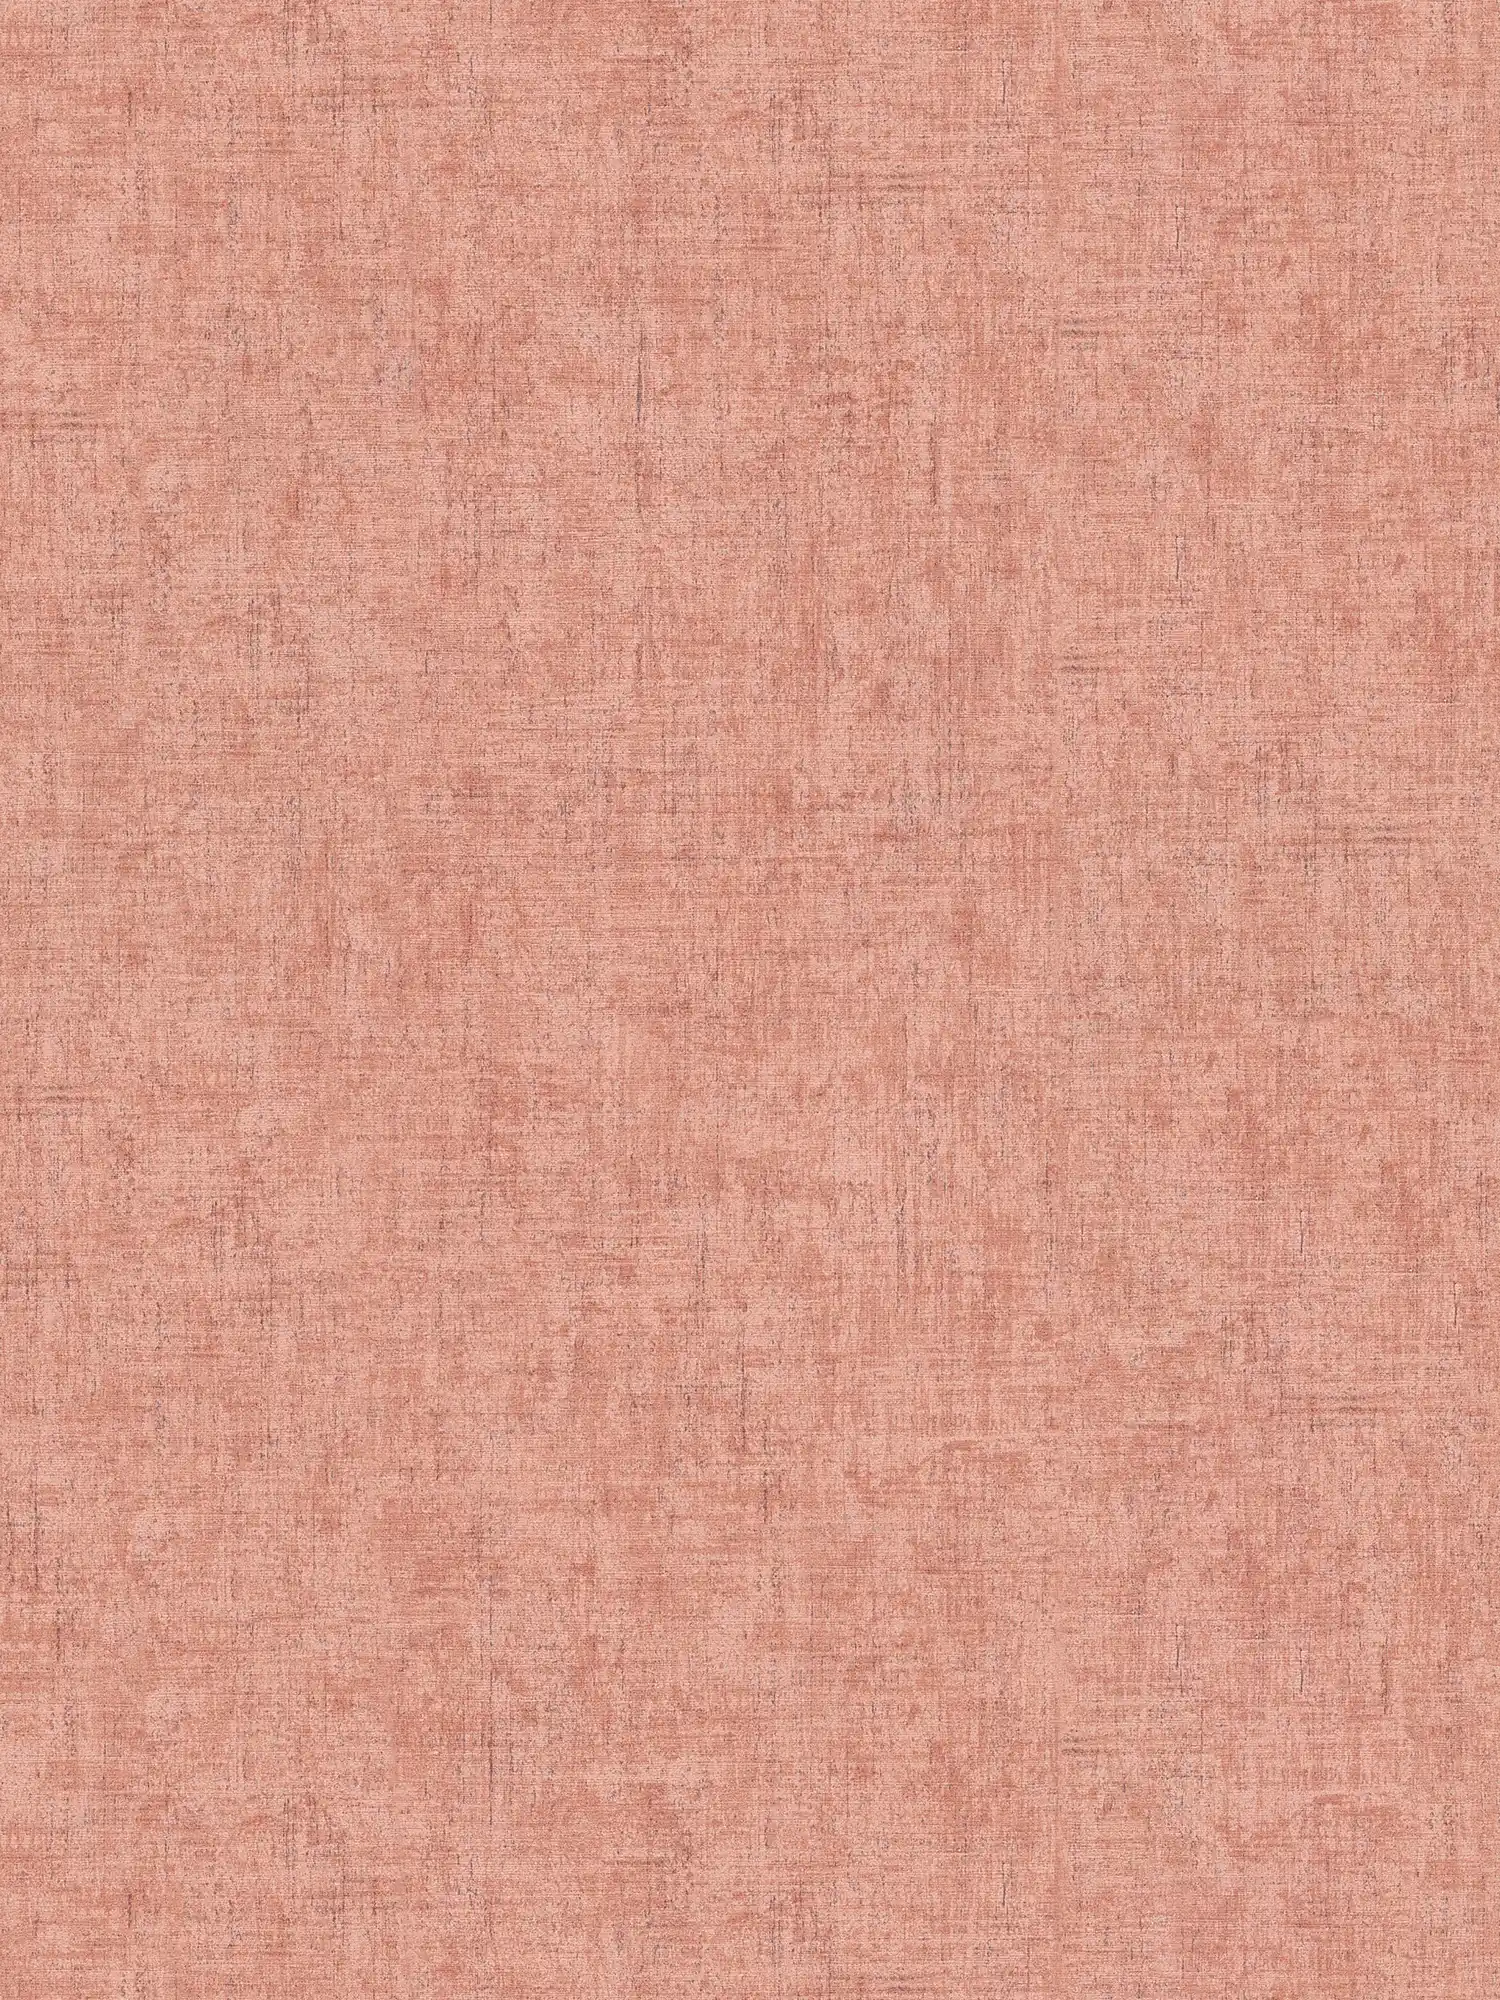 Vliesbehang roze grijs gevlekt met kleur arceringen & reliëf structuur
